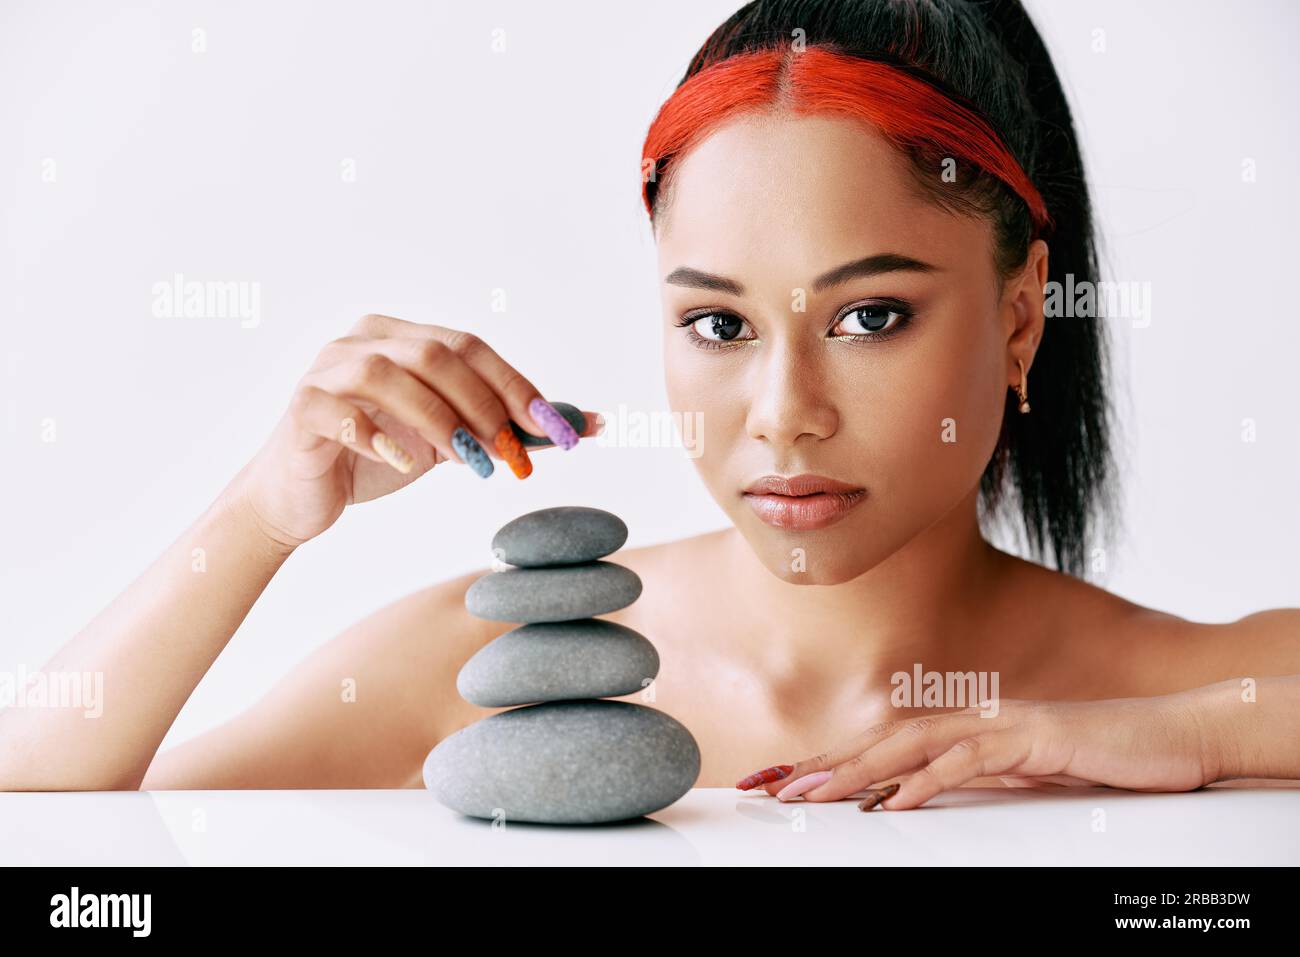 Hübsche afroamerikanische Frau, die Pyramide der Steine auf weißem Hintergrund macht. Balance-Konzept Stockfoto